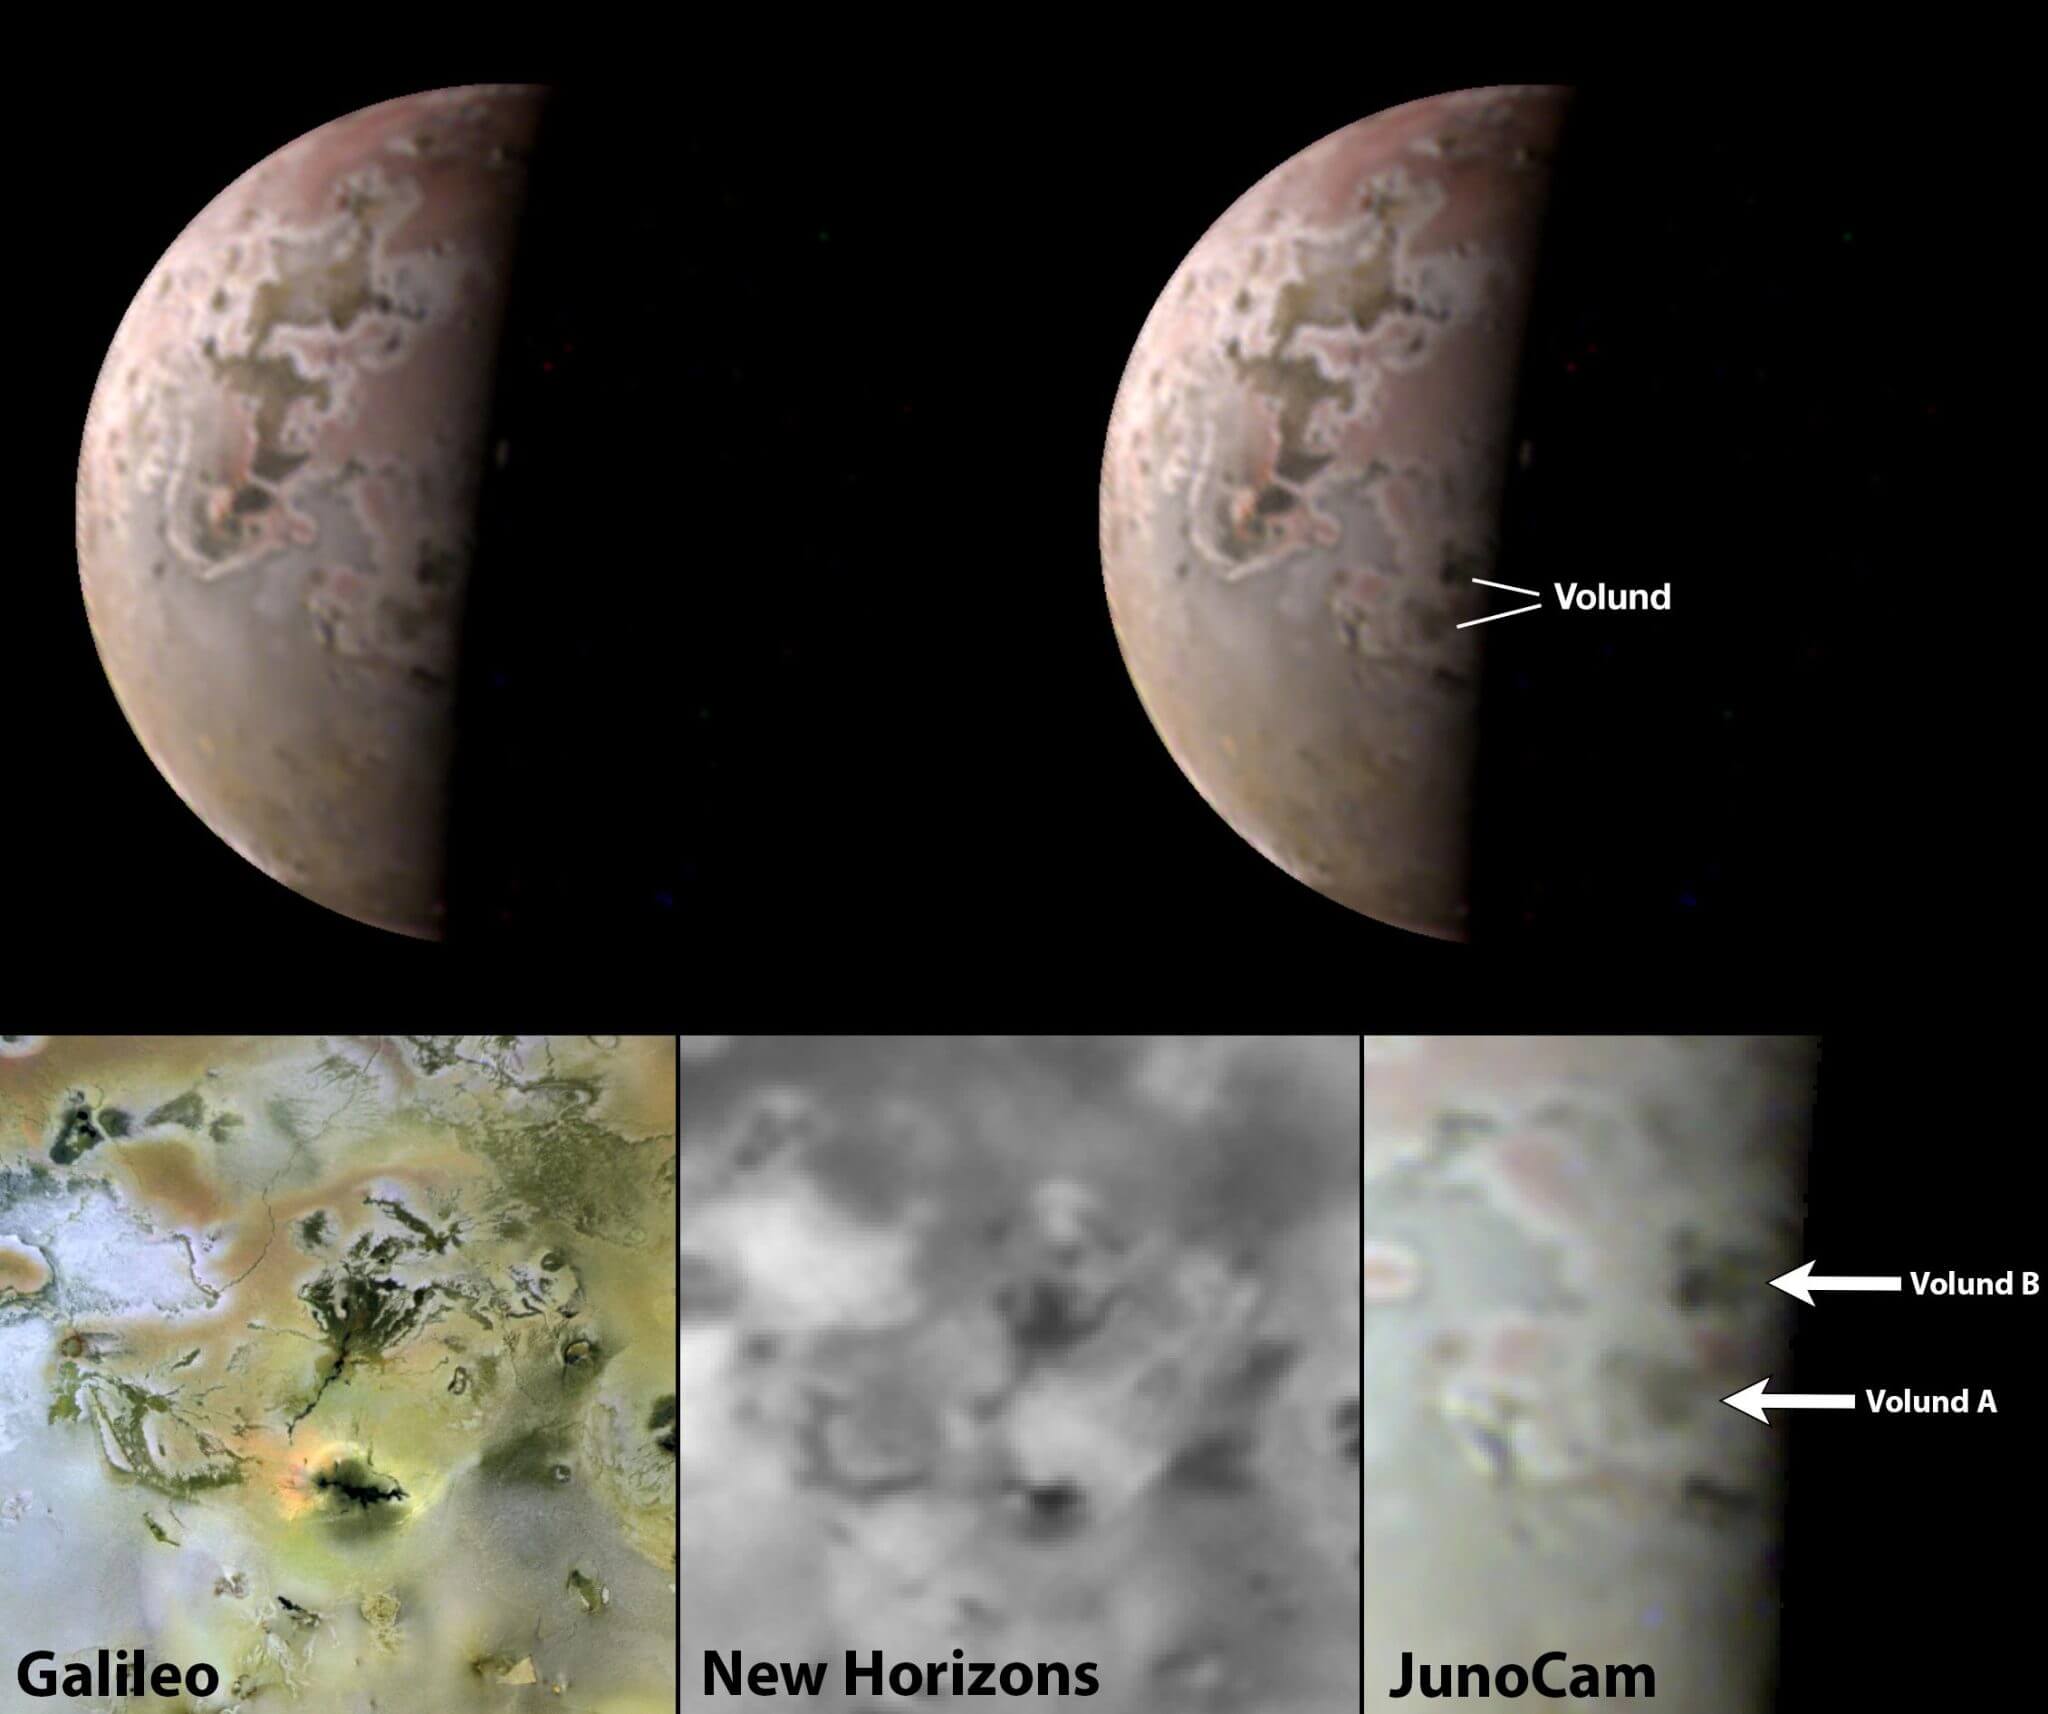 בחלק העליון ובפינה הימנית התחתונה, תמונות של ג'ונו-קאם שצולמו במאי 2023 של ירח צדק איו מראות ששדות הלבה סביב הרי הגעש וולונד אי ו-בי נראים כאילו הם גדלים בגודלם. גשושיות נאס"א קודמות צילמו את אותו אזור ב-1996, בחלק השמאלי התחתון, וב-2007, במרכז התחתון. קרדיט: גלילאו: נאס"א/JPL/אוניברסיטת אריזונה. ניו הורייזונס: נאס"א/JHUAPL/SWRI. ג'ונו: נתוני תמונה: נאס"א/JPL-Caltech/SwRI/MSSS. עיבוד תמונה: ג'ייסון פרי (CC BY)